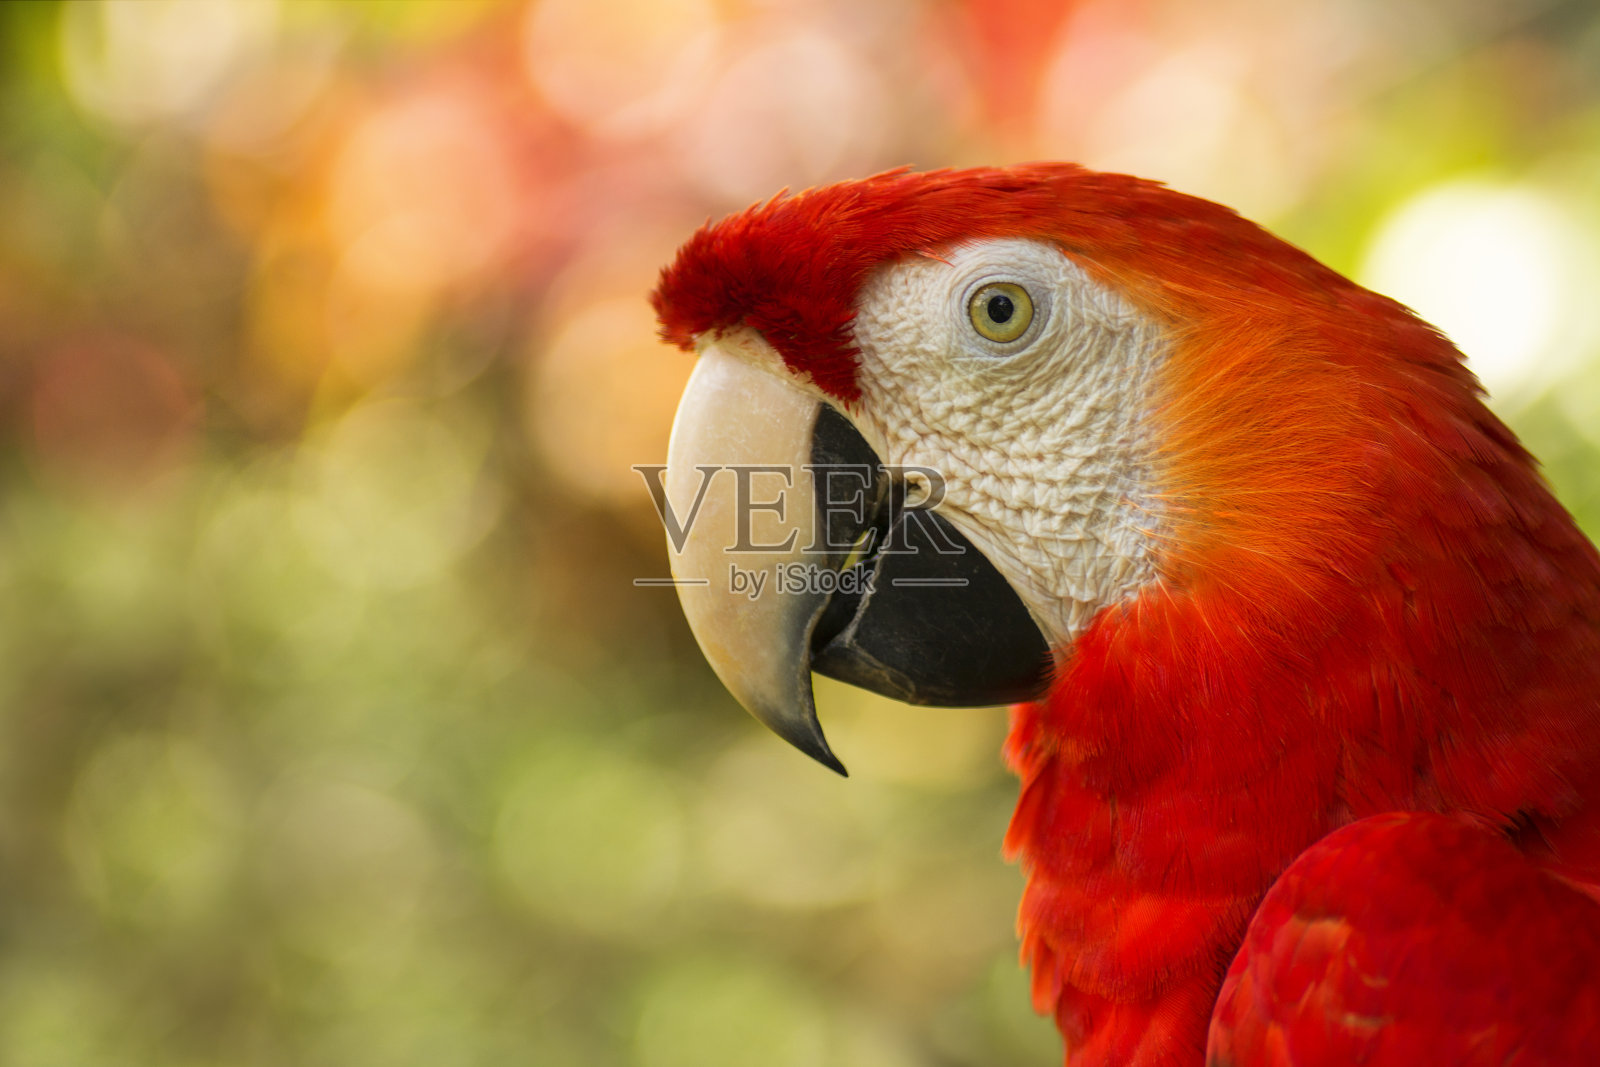 哥斯达黎加猩红色金刚鹦鹉的特写照片摄影图片